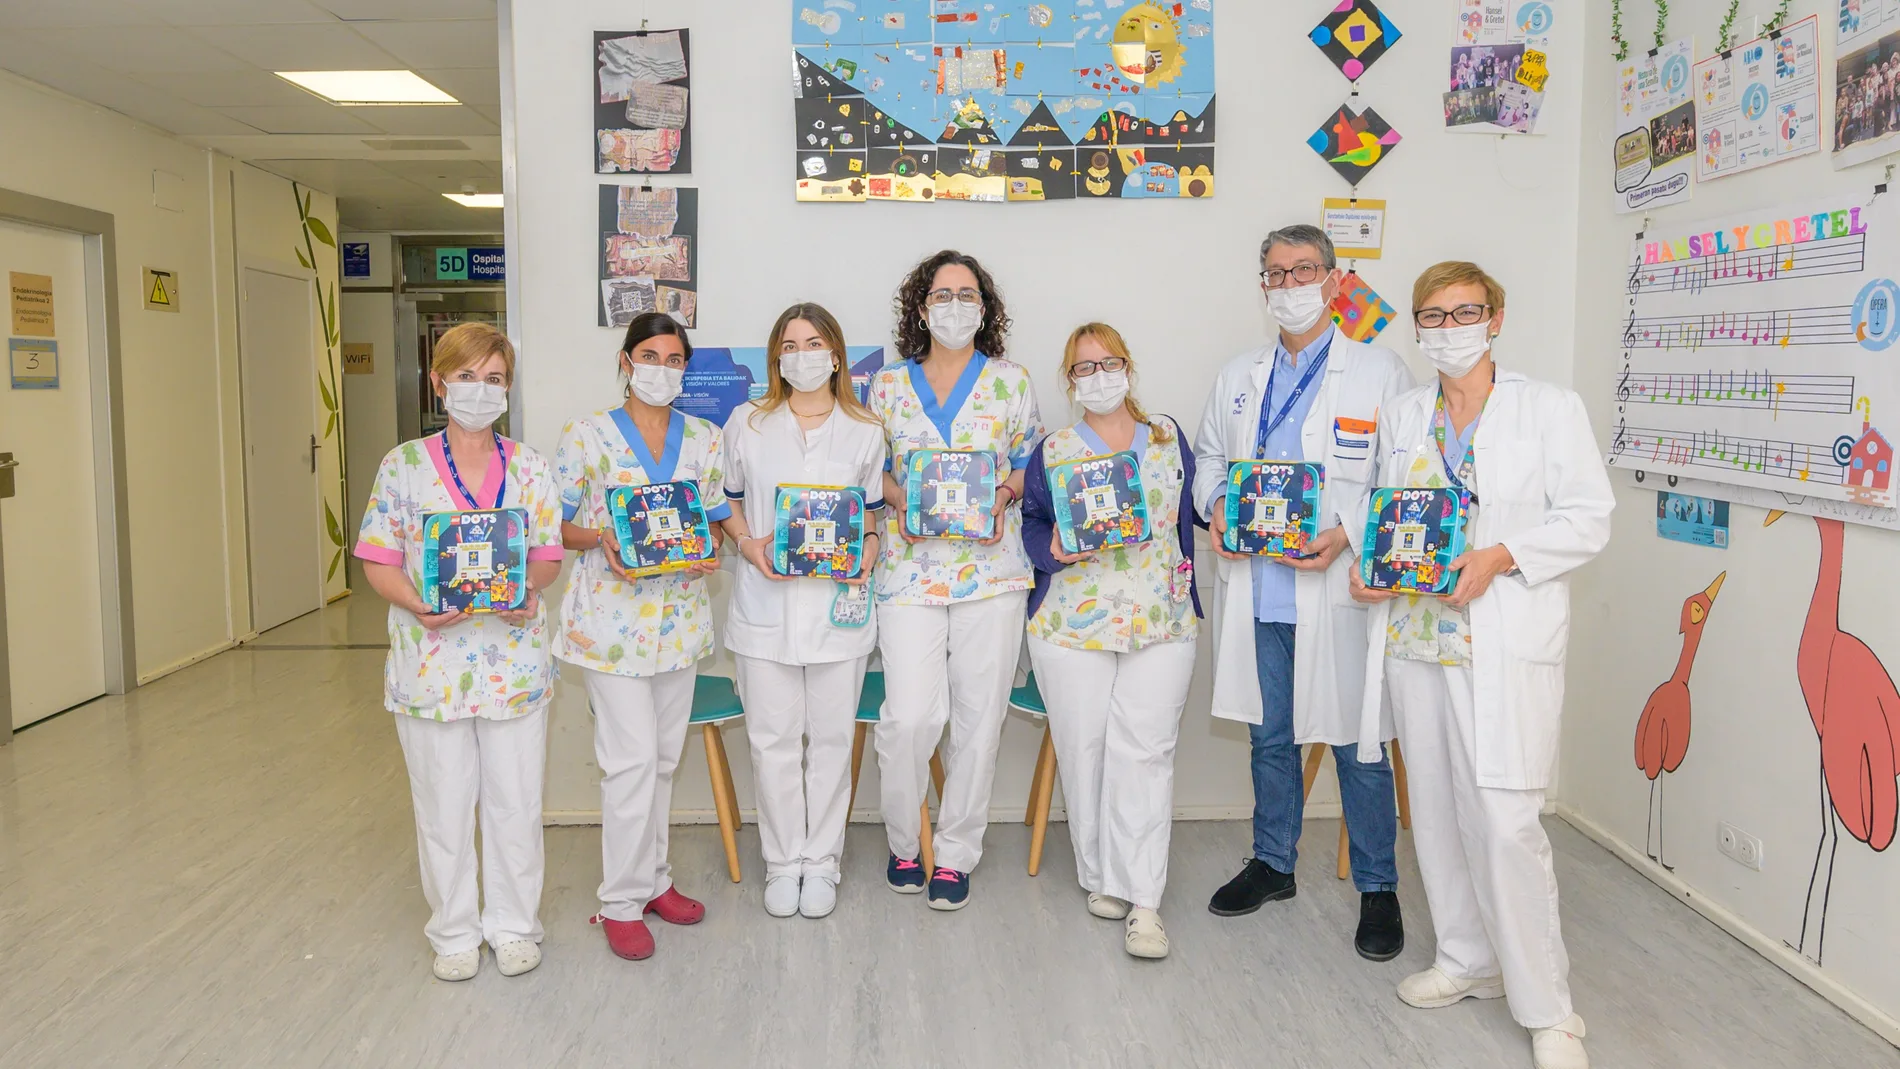 La Fundación Pequeño Deseo distribuye miles de juguetes del Grupo LEGO en las unidades infantiles de centros médicos